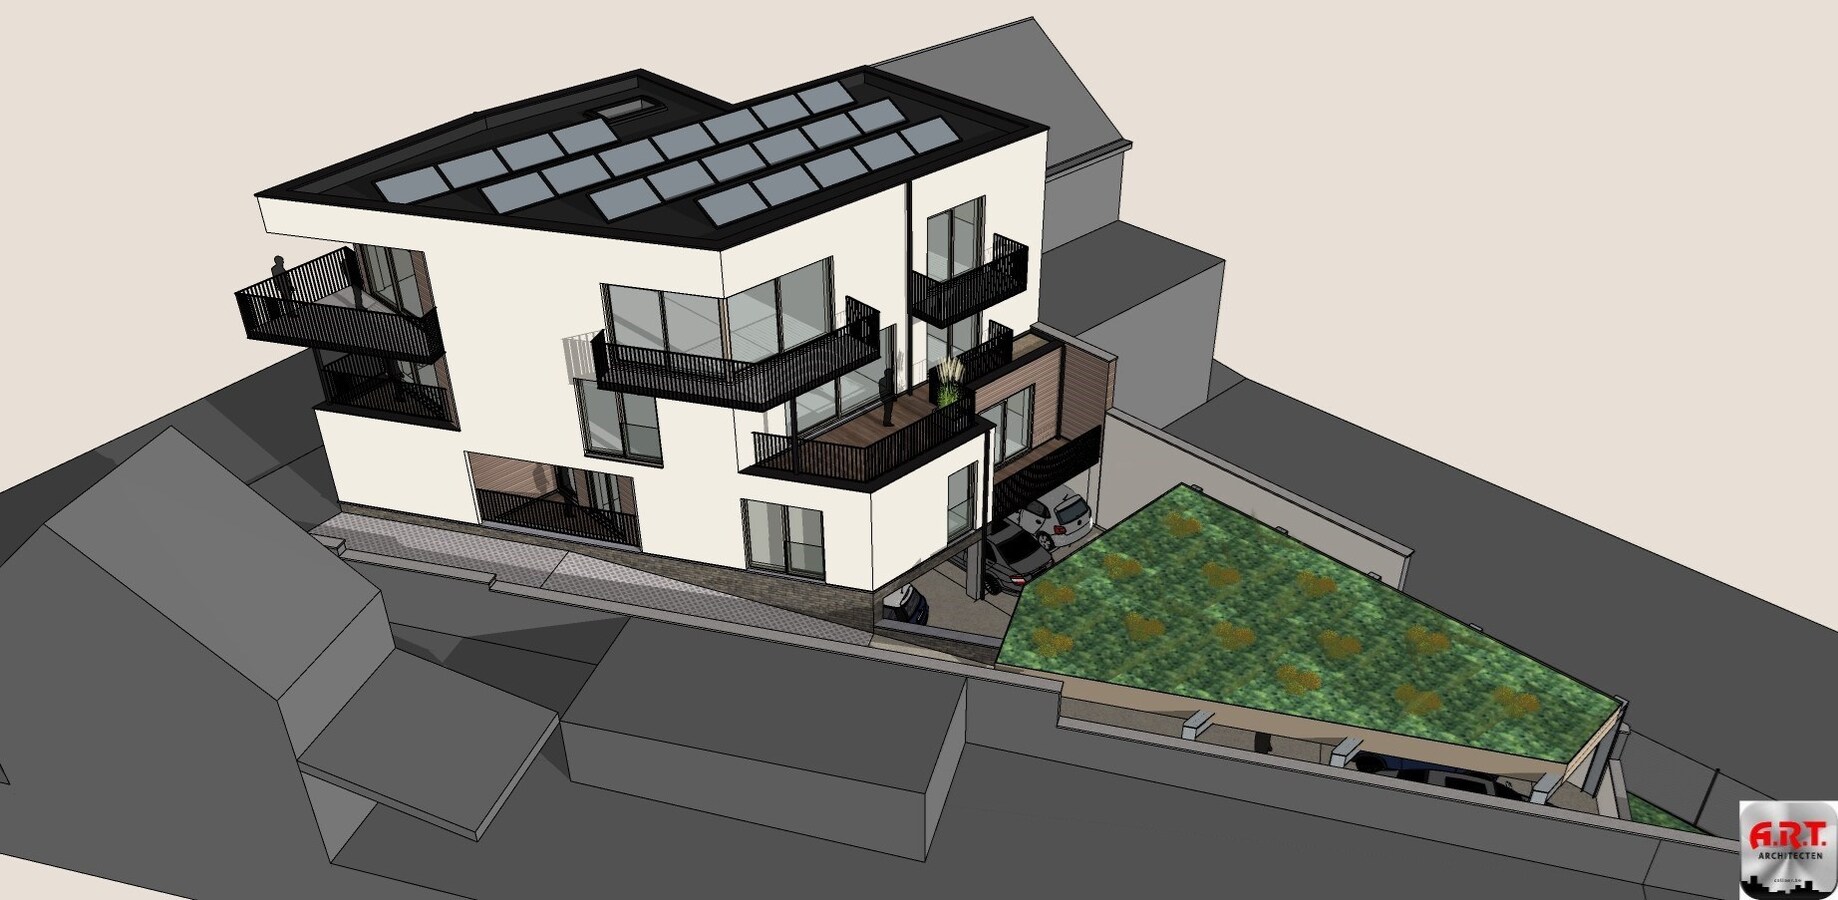 LINDEN appartement 3 slks + terrassen + berging + carport 